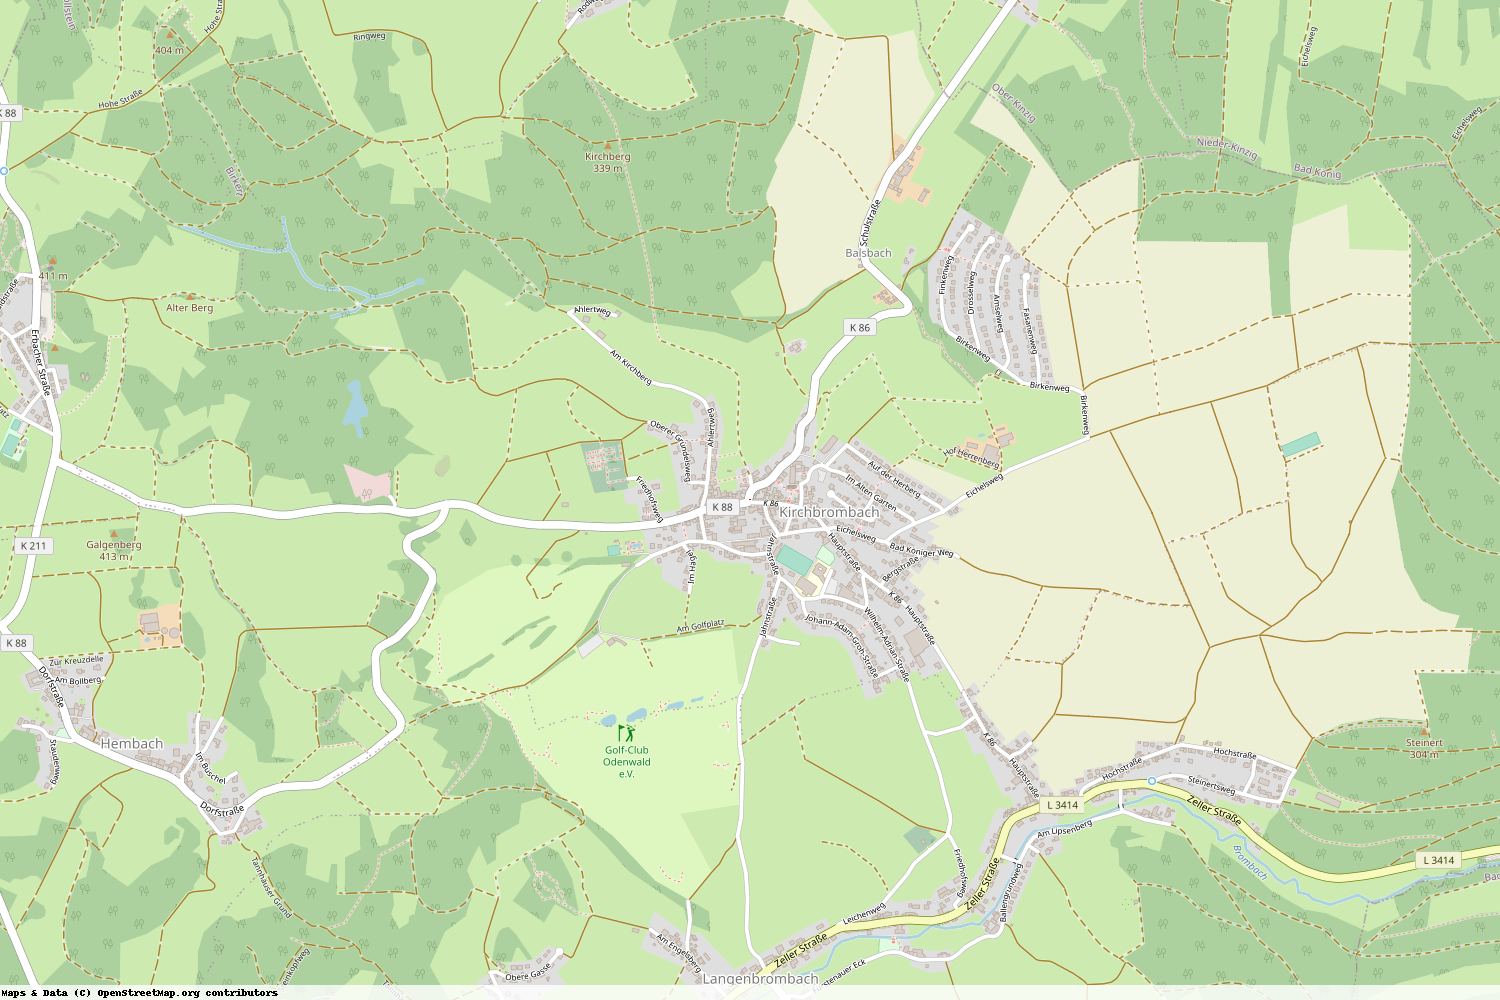 Ist gerade Stromausfall in Hessen - Odenwaldkreis - Brombachtal?